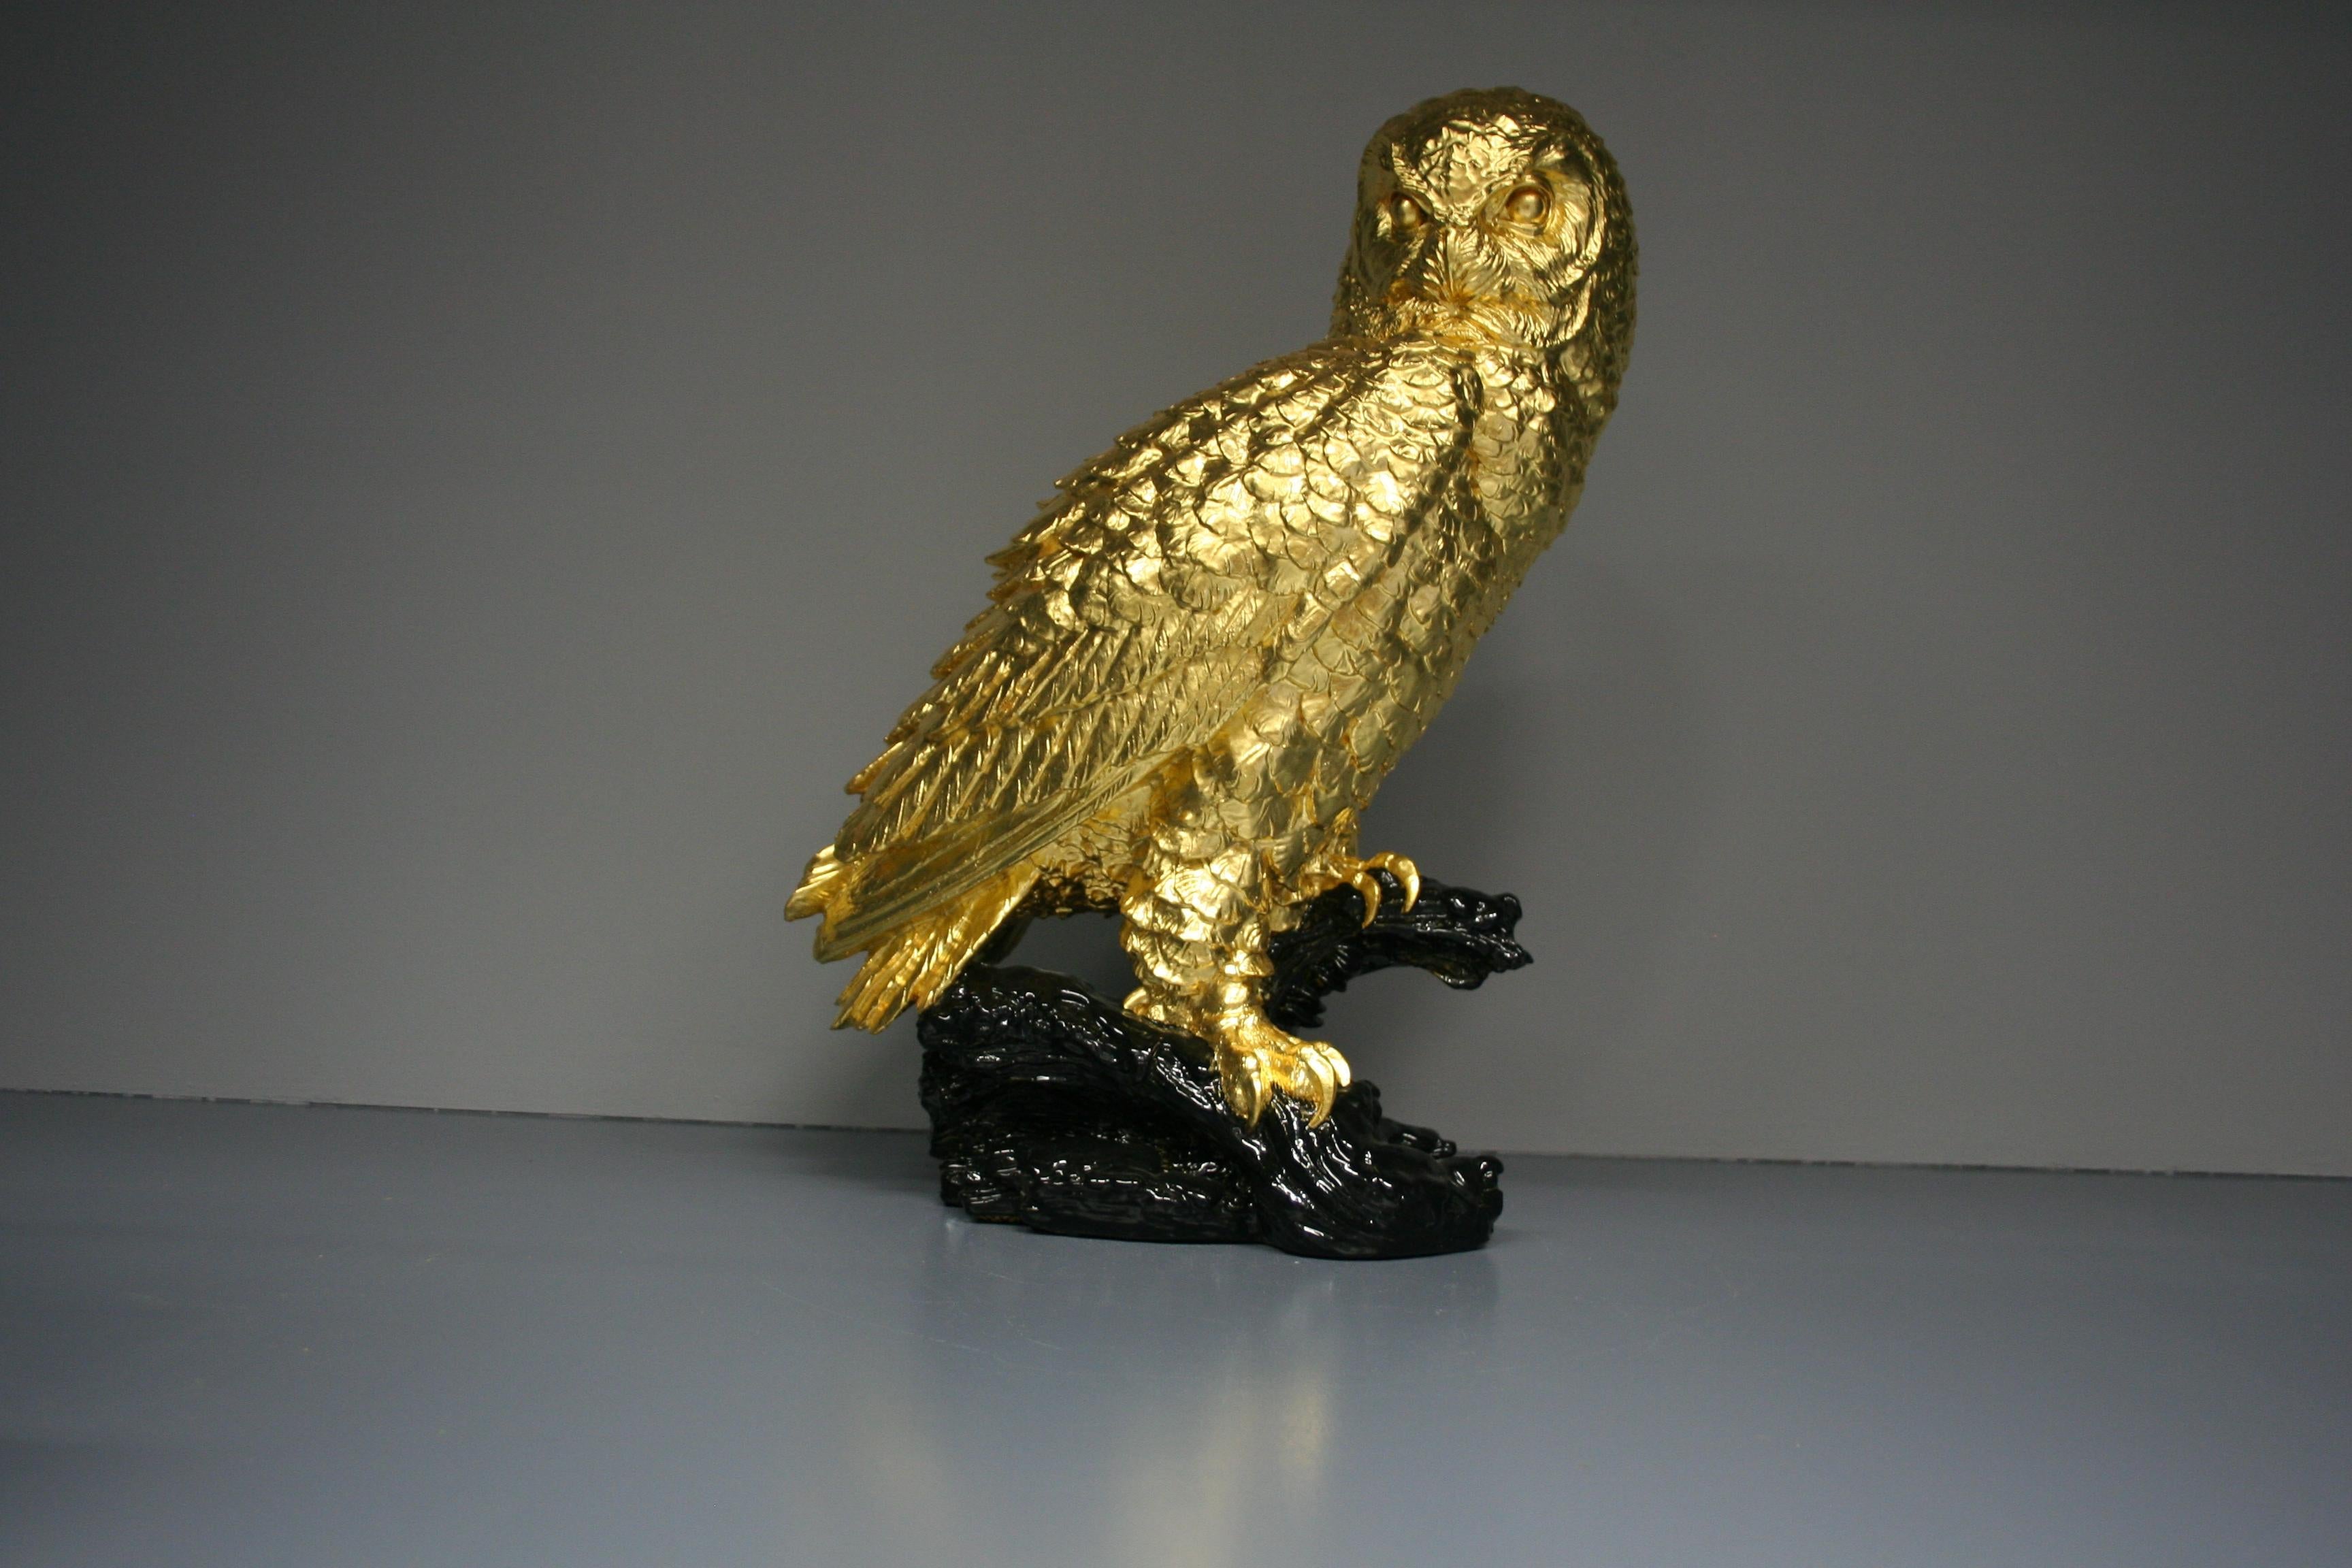 Golden owl 24 Karat gilded